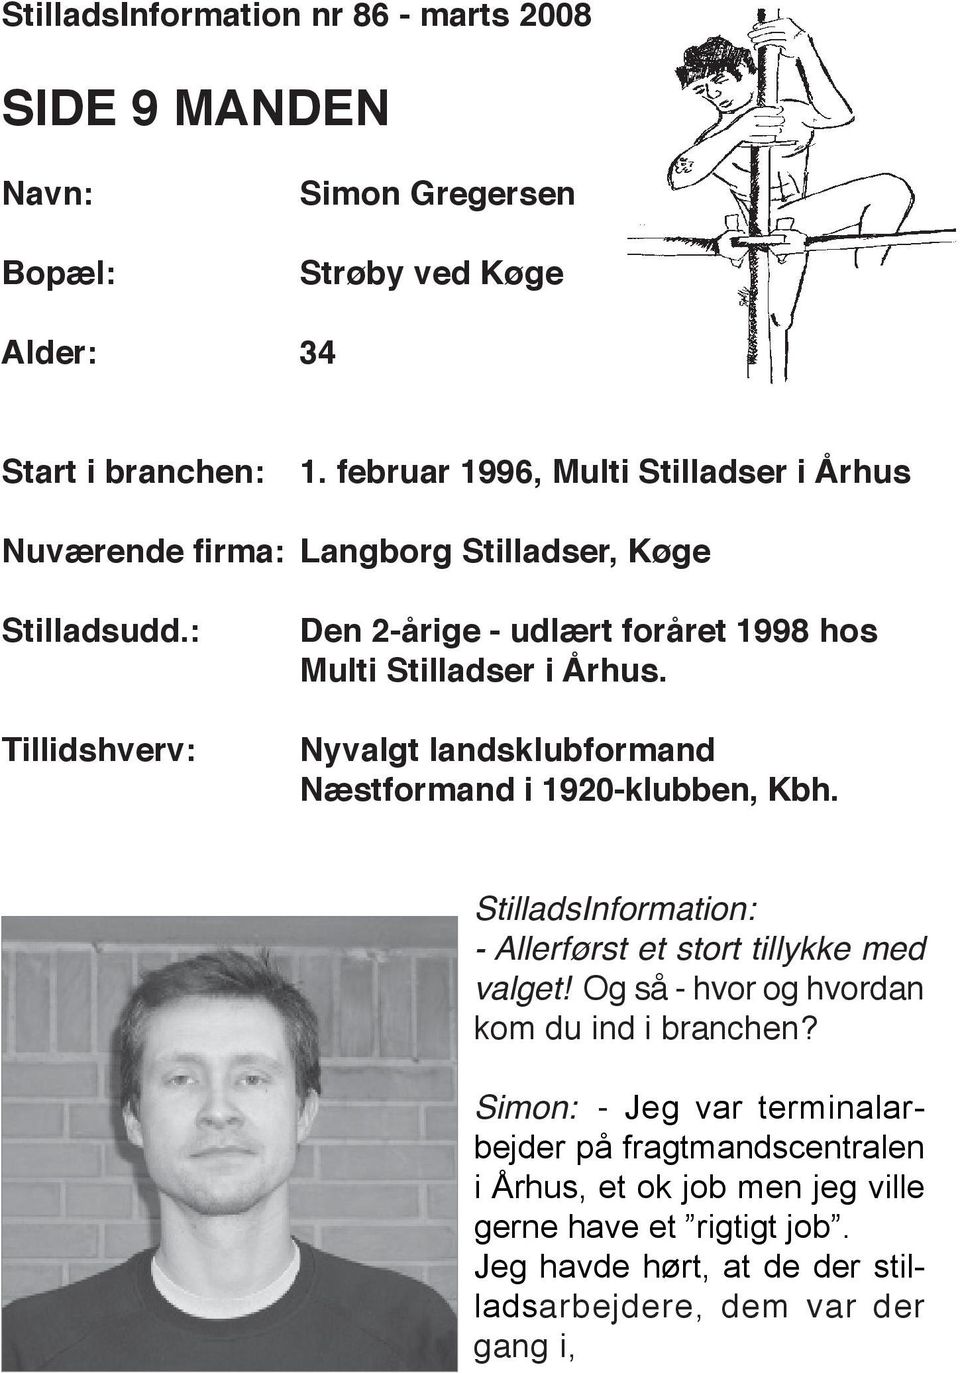 : Tillidshverv: Den 2-årige - udlært foråret 1998 hos multi Stilladser i Århus. nyvalgt landsklubformand næstformand i 1920-klubben, Kbh.